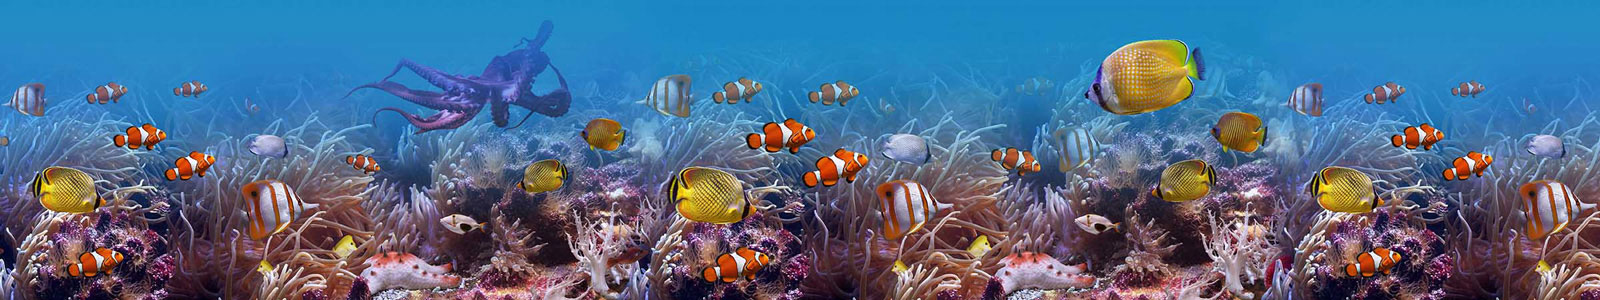 №3727 - Разнообразие рыб под водой